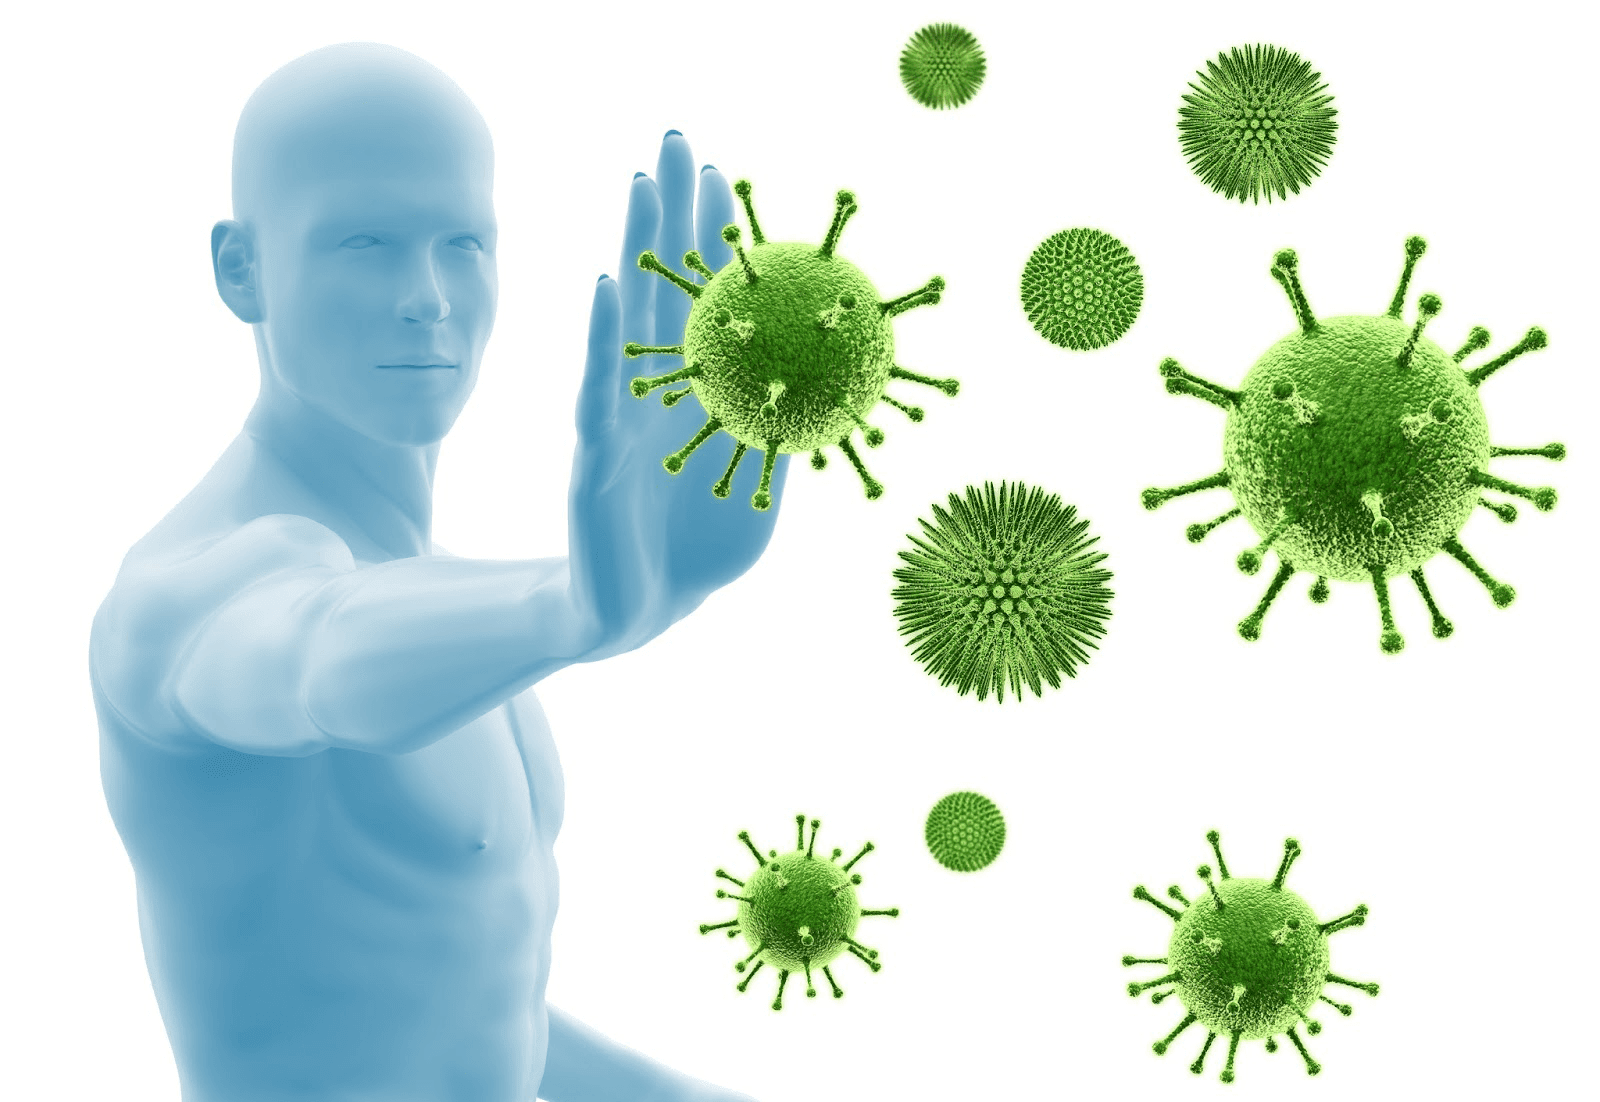 Hỏi & Đáp] Hệ thống miễn dịch là gì? Làm sao để tăng cường hệ miễn dịch? - Vua Nệm